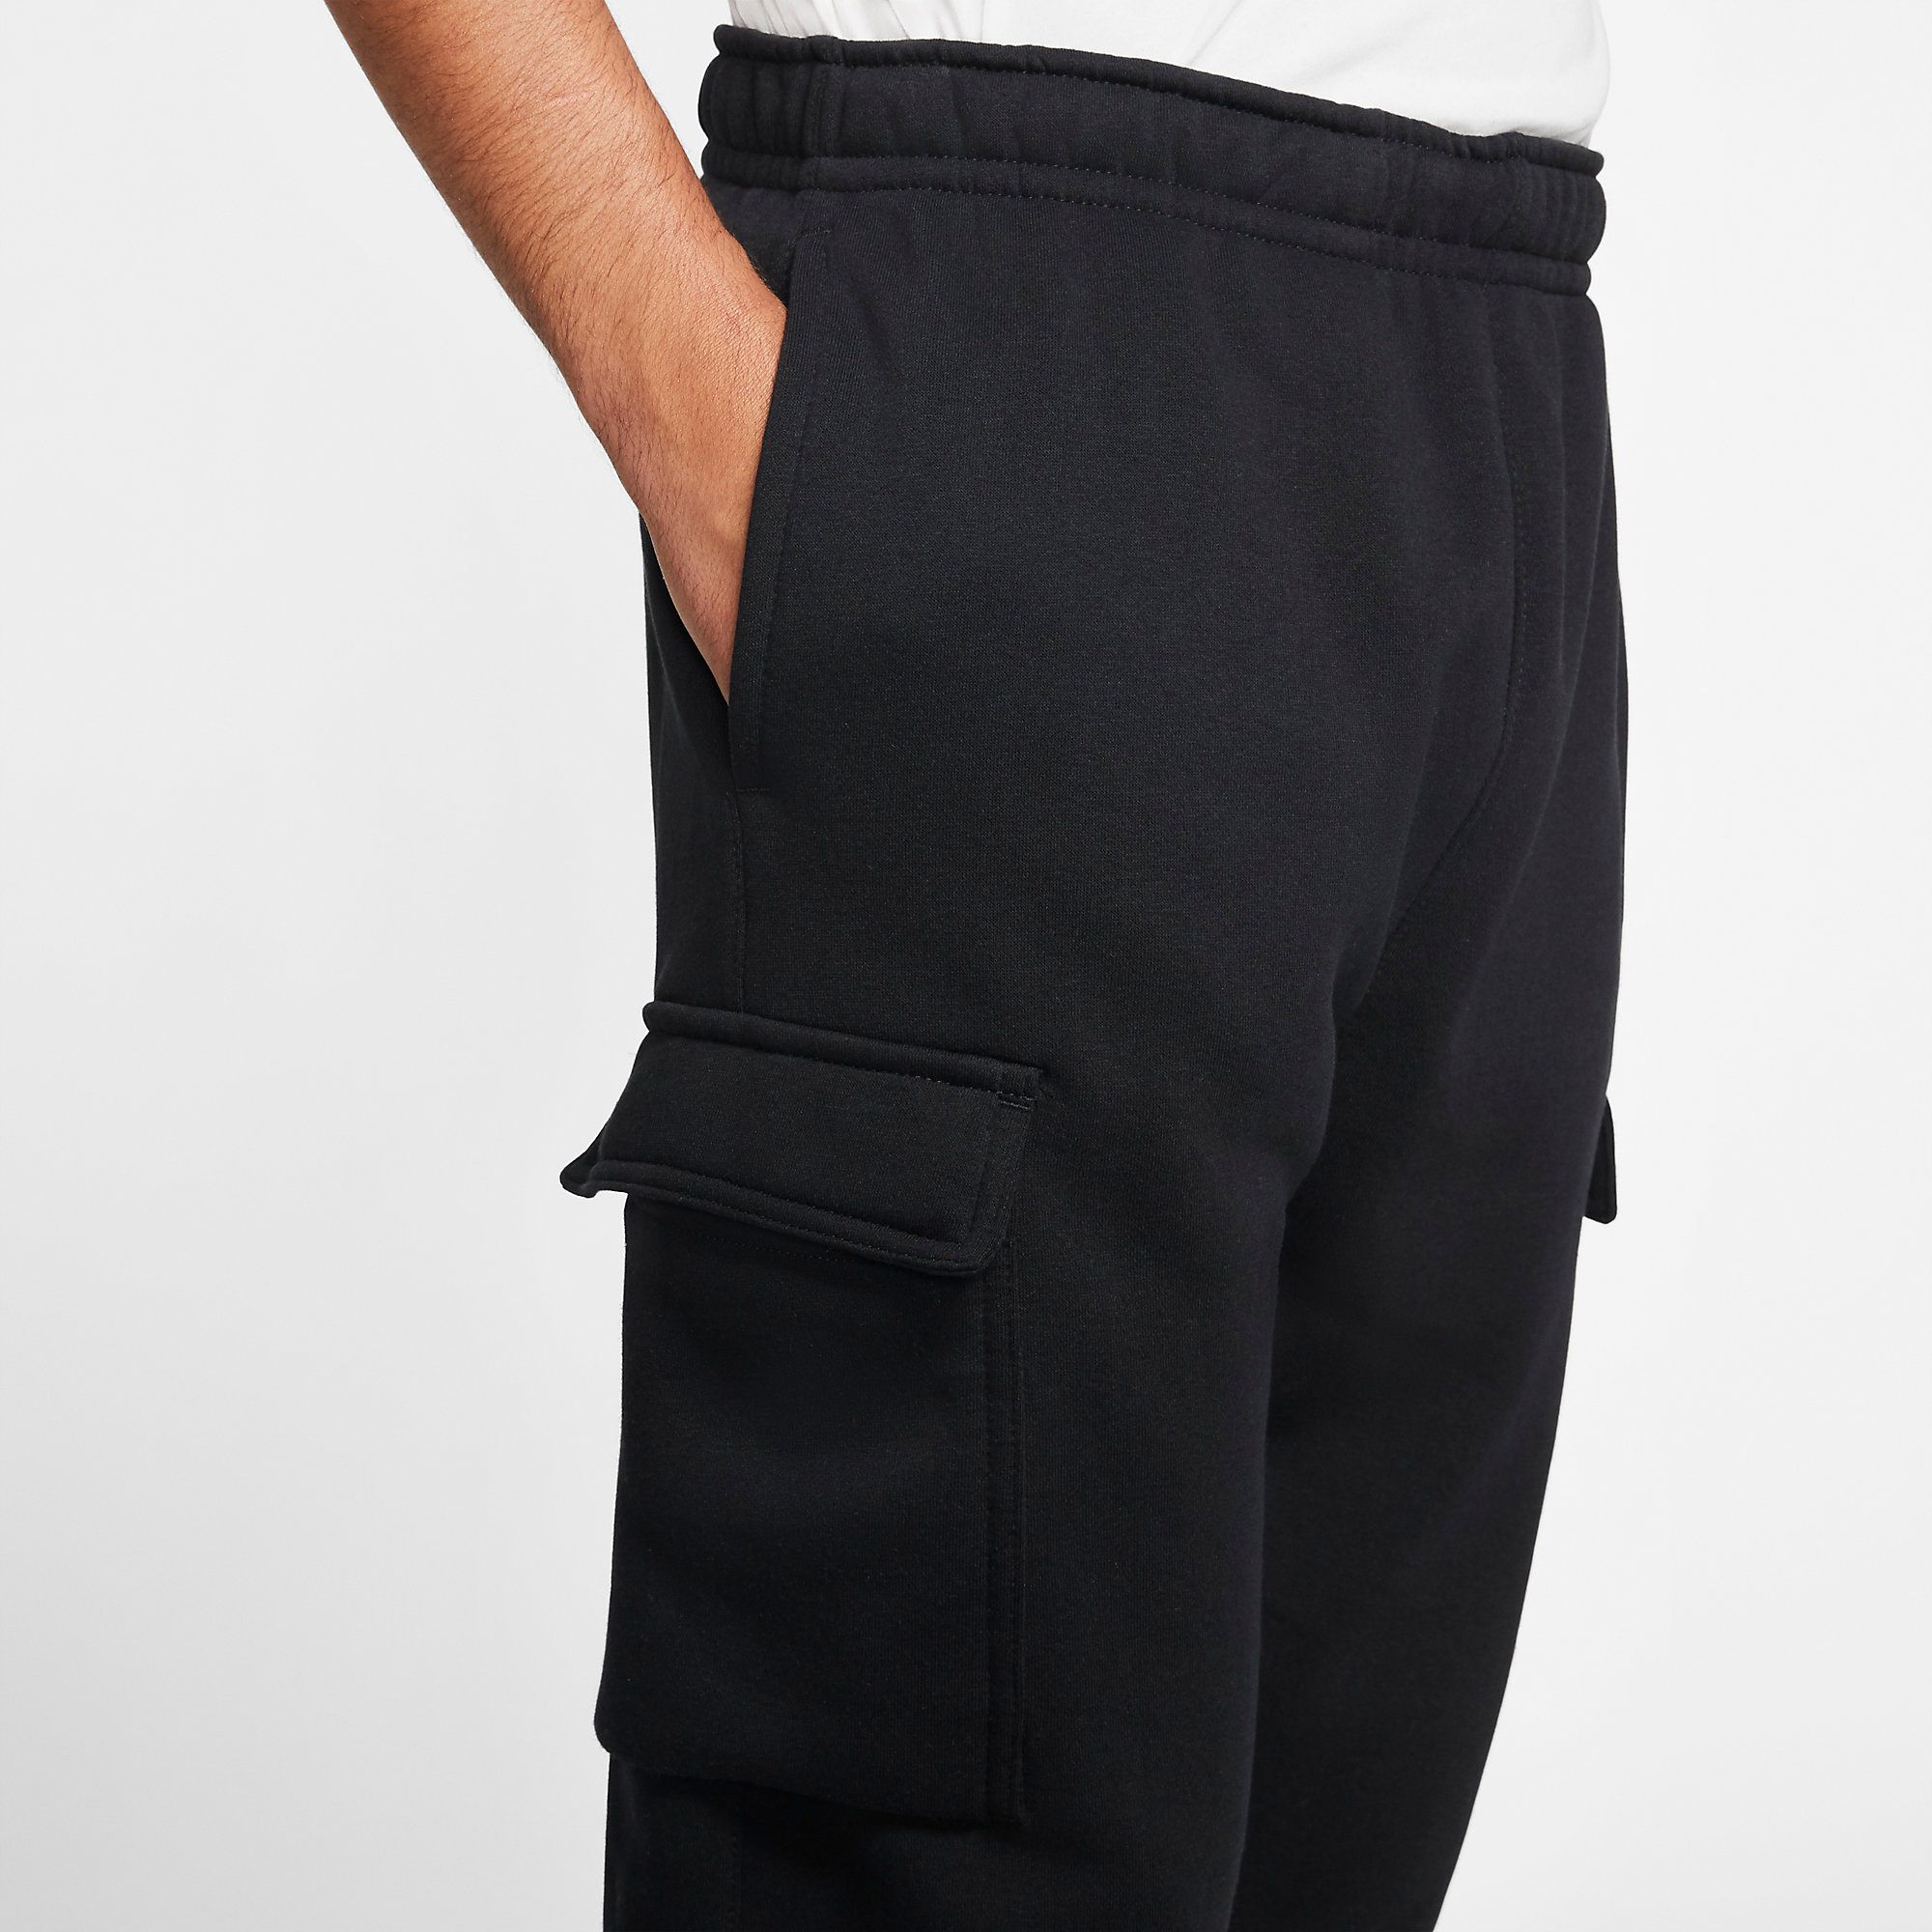  Nike Sportswear Club Fleece Cargo Pants - Black 